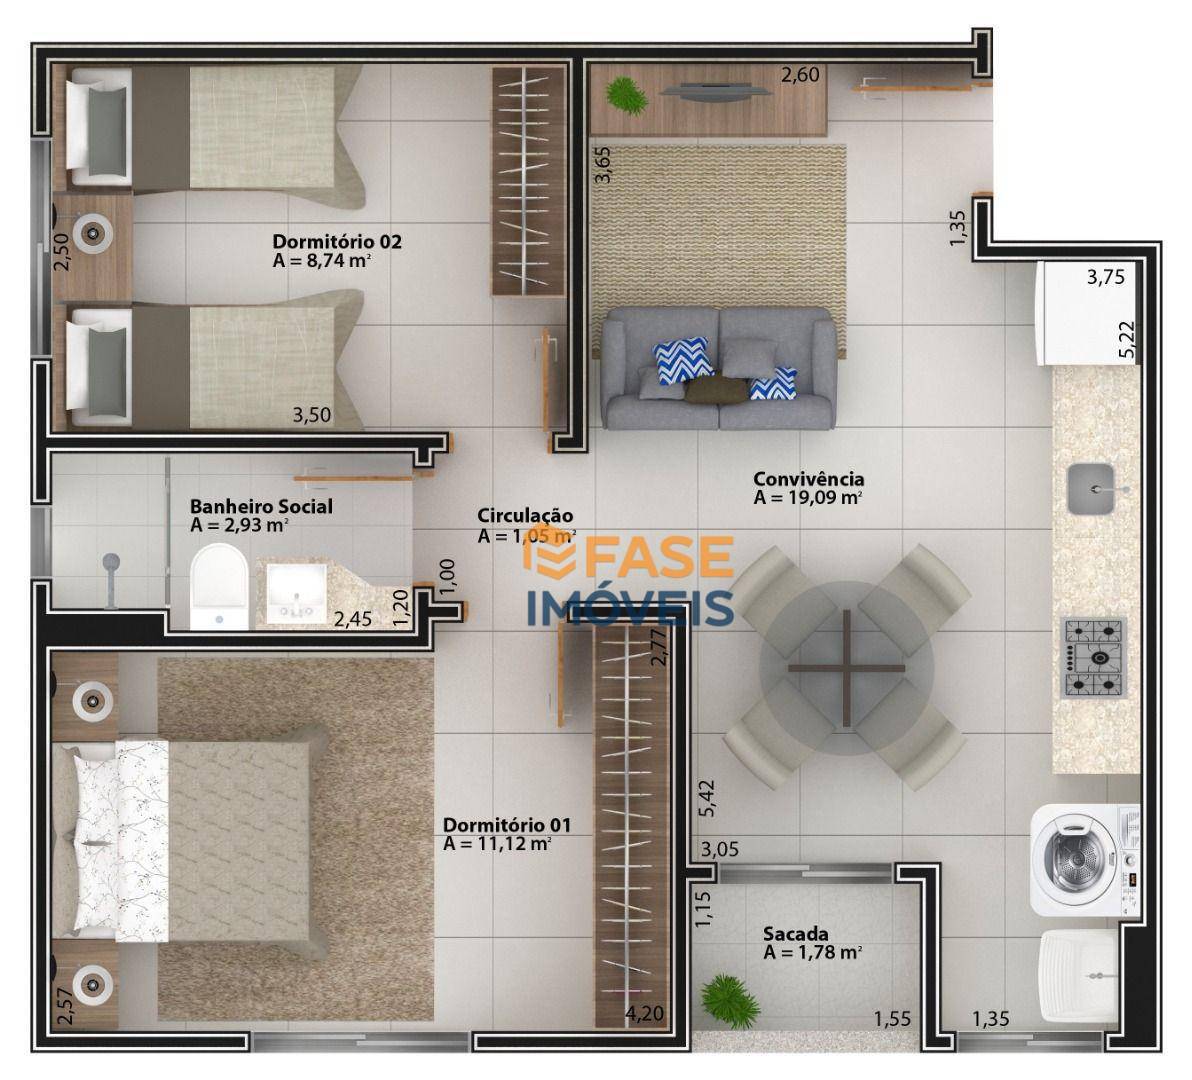 Apartamento, 2 quartos, 50 m² - Foto 5